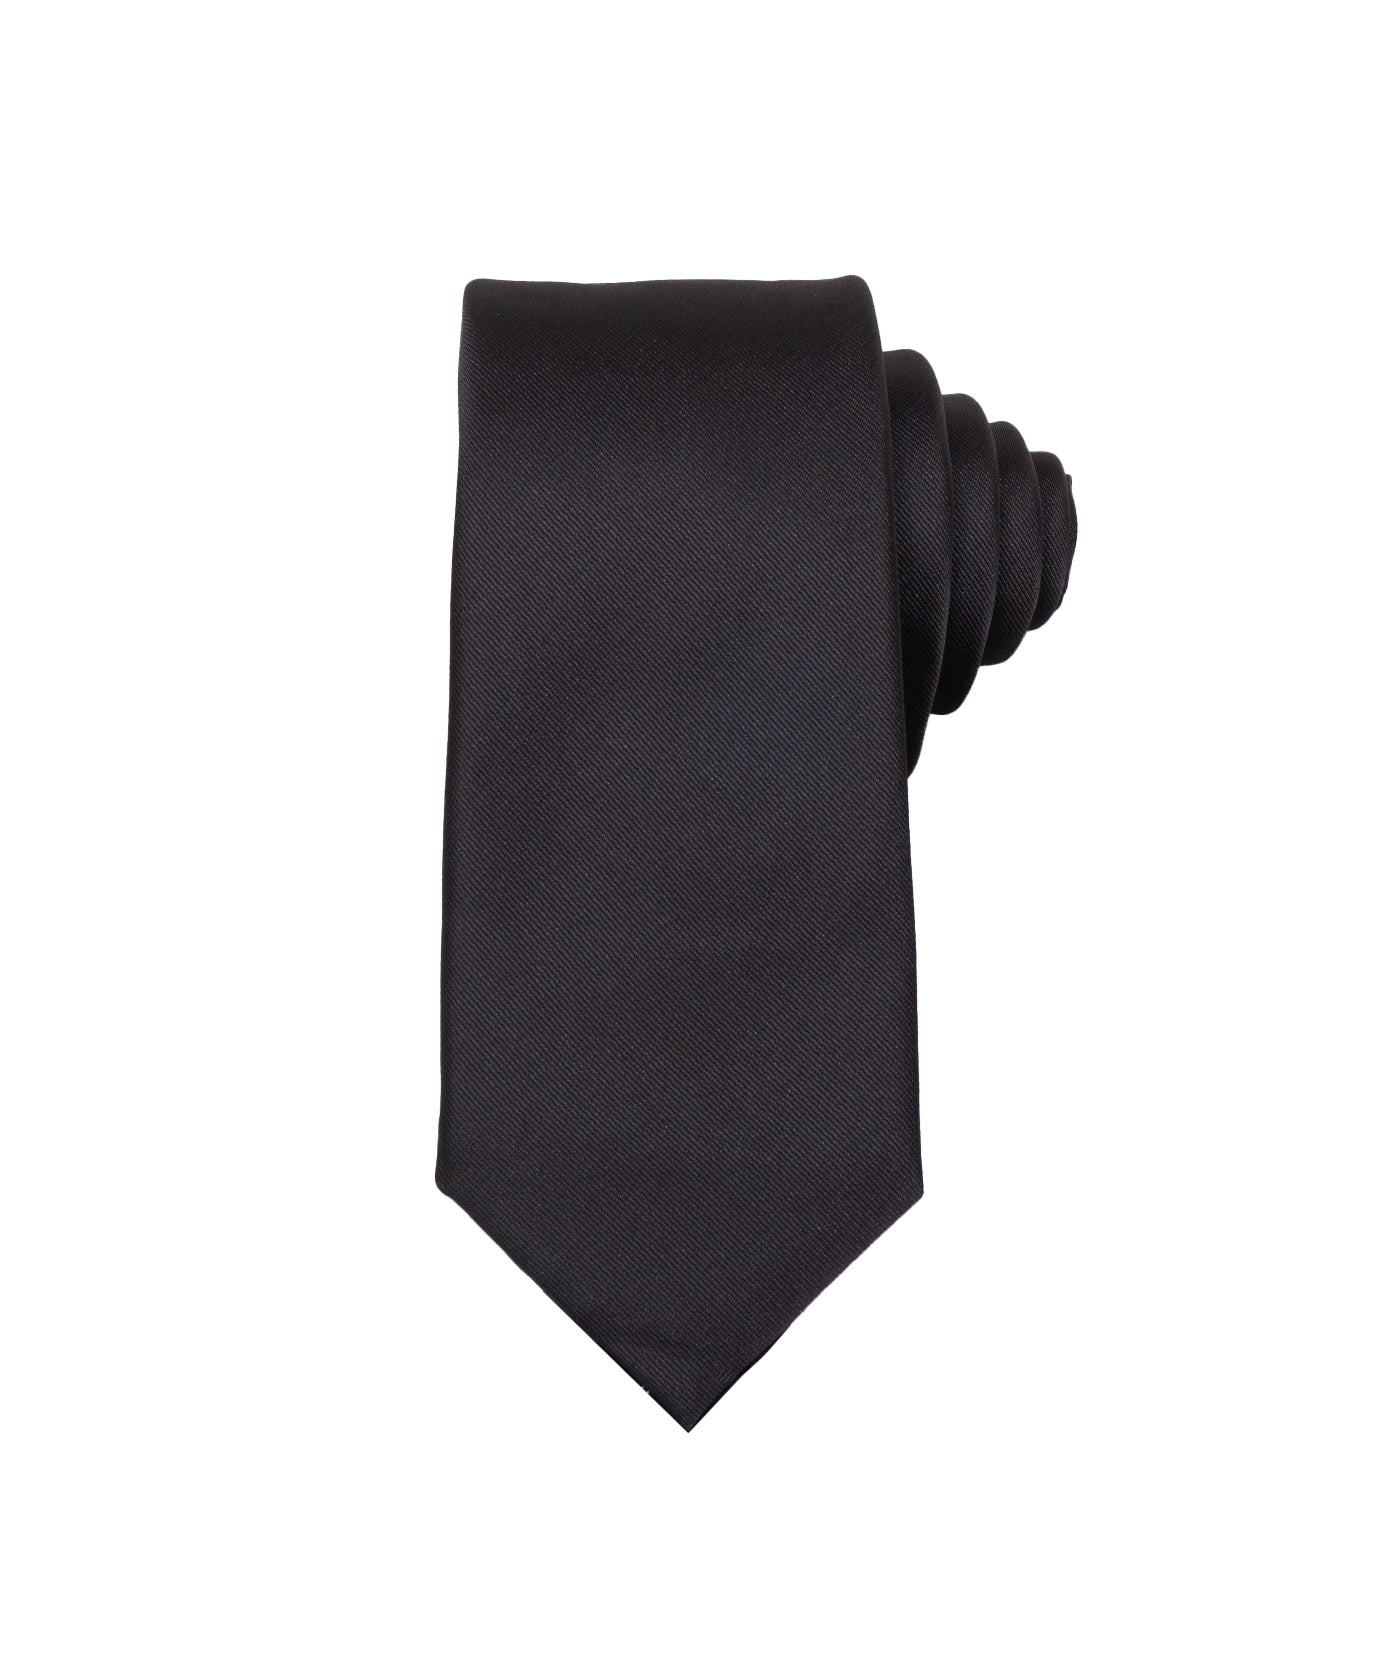 Corbata Negra Básica con Textura